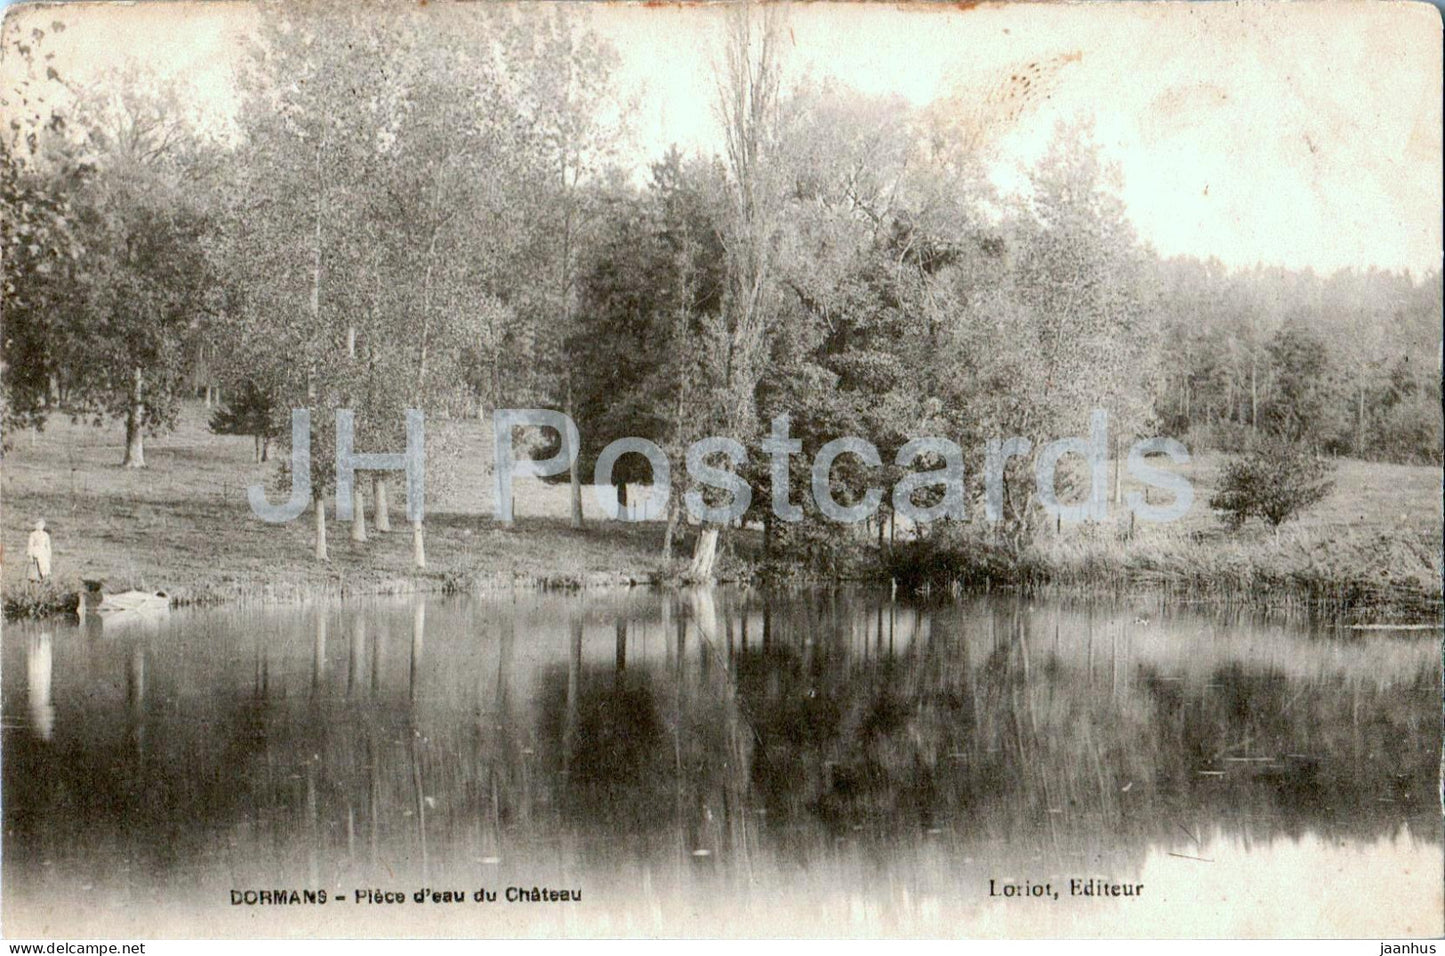 Dormans - Plece d'eau du Chateau - old postcard - France - used - JH Postcards